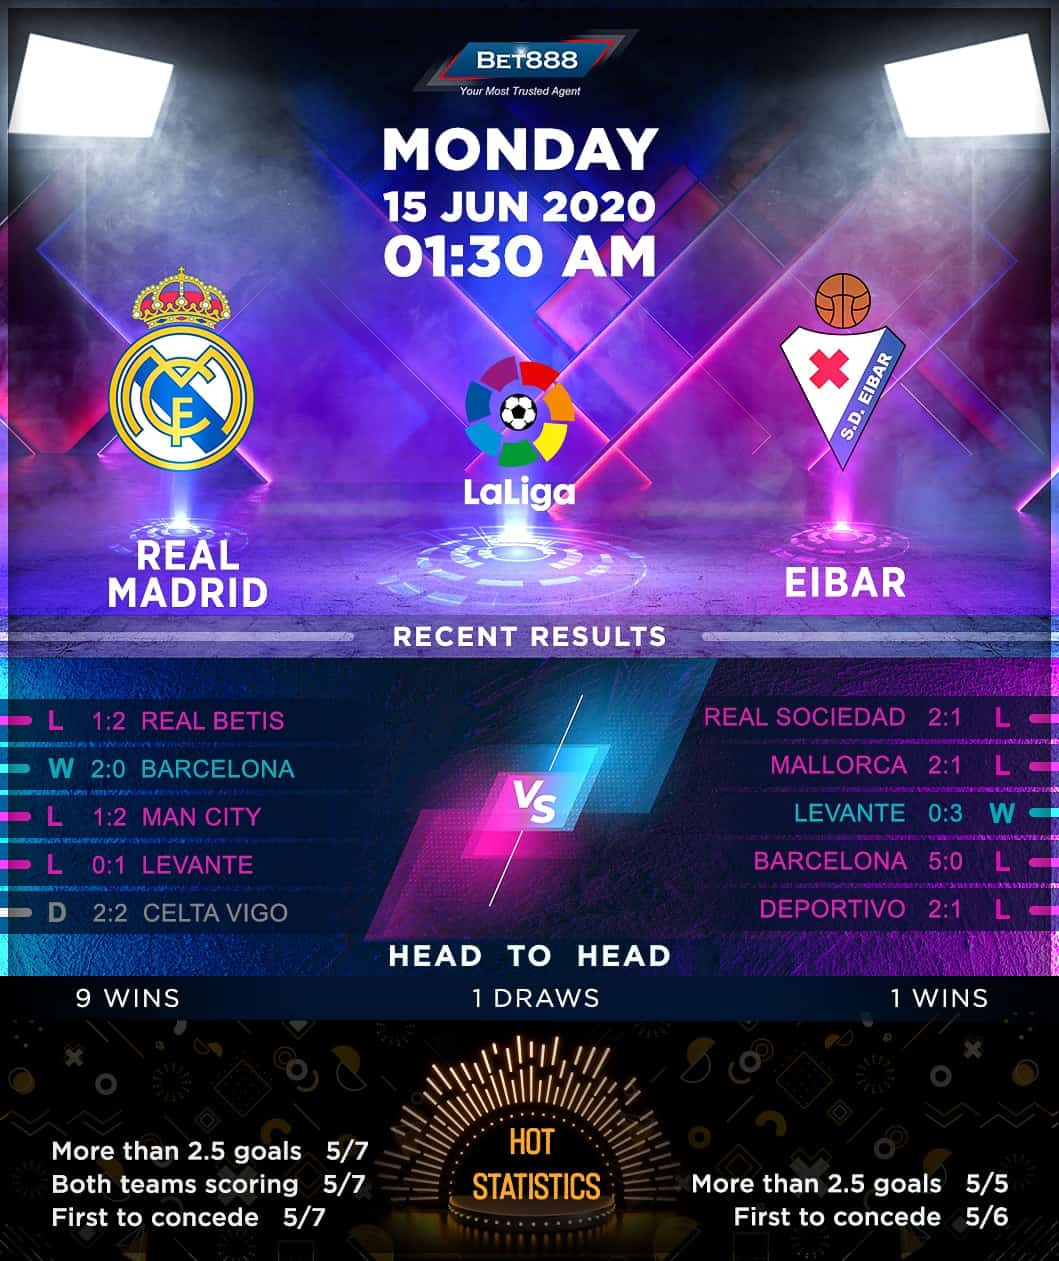 Real Madrid vs Eibar 15/06/20